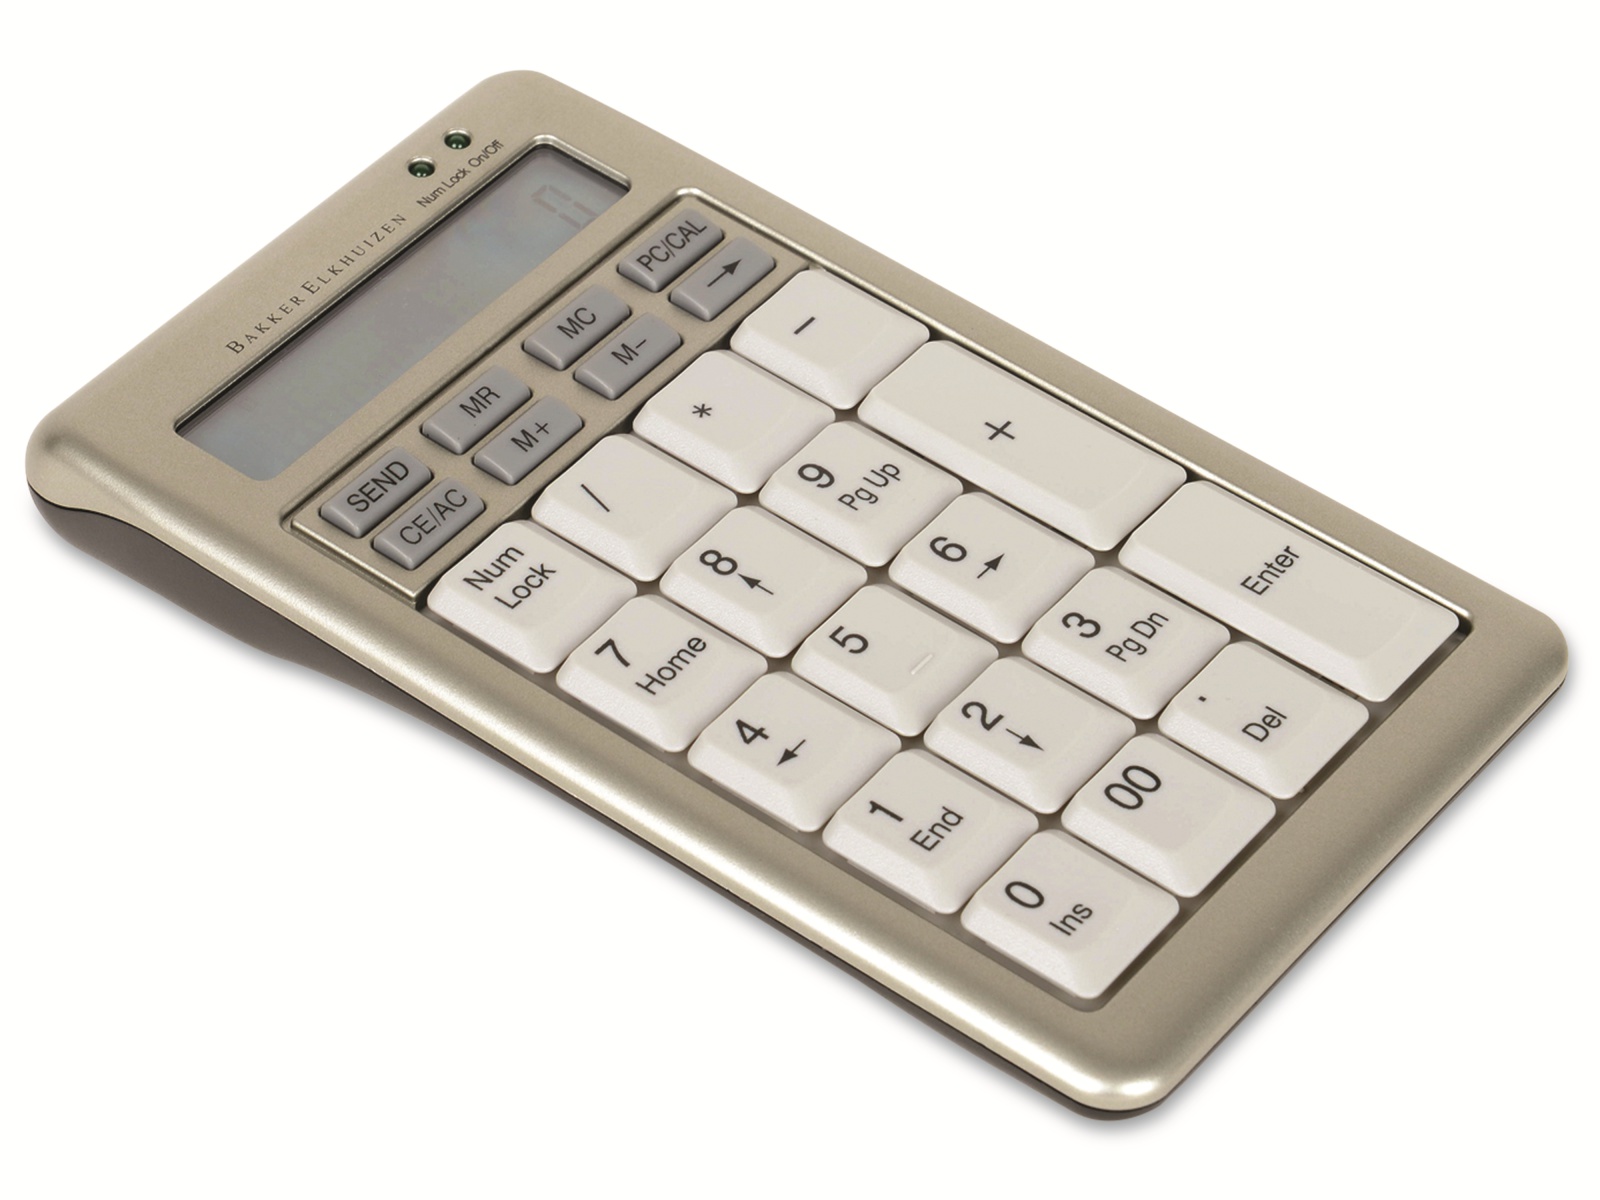 BakkerElkhuizen Keypad S-board 840 Design, mit Taschenrechnerfunktion